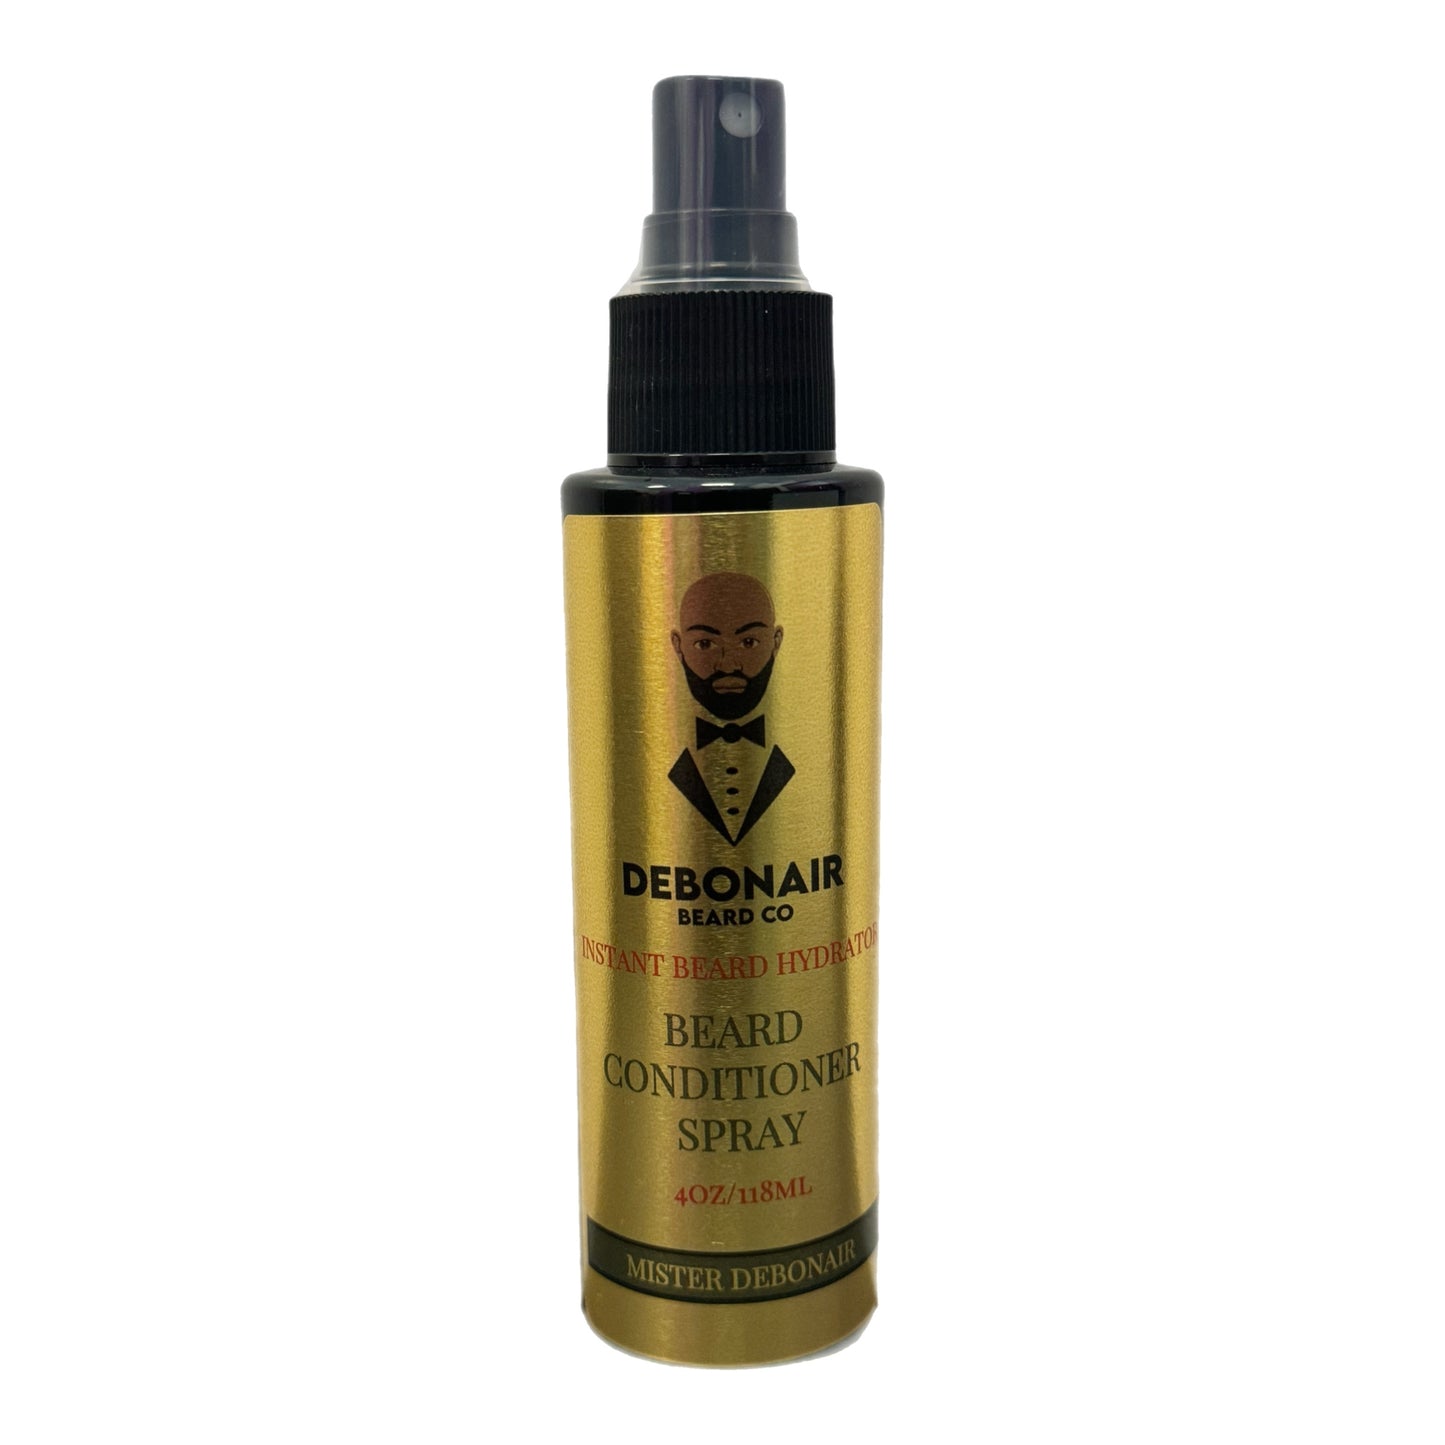 Beard Conditioning Spray ( Mister Debonair)